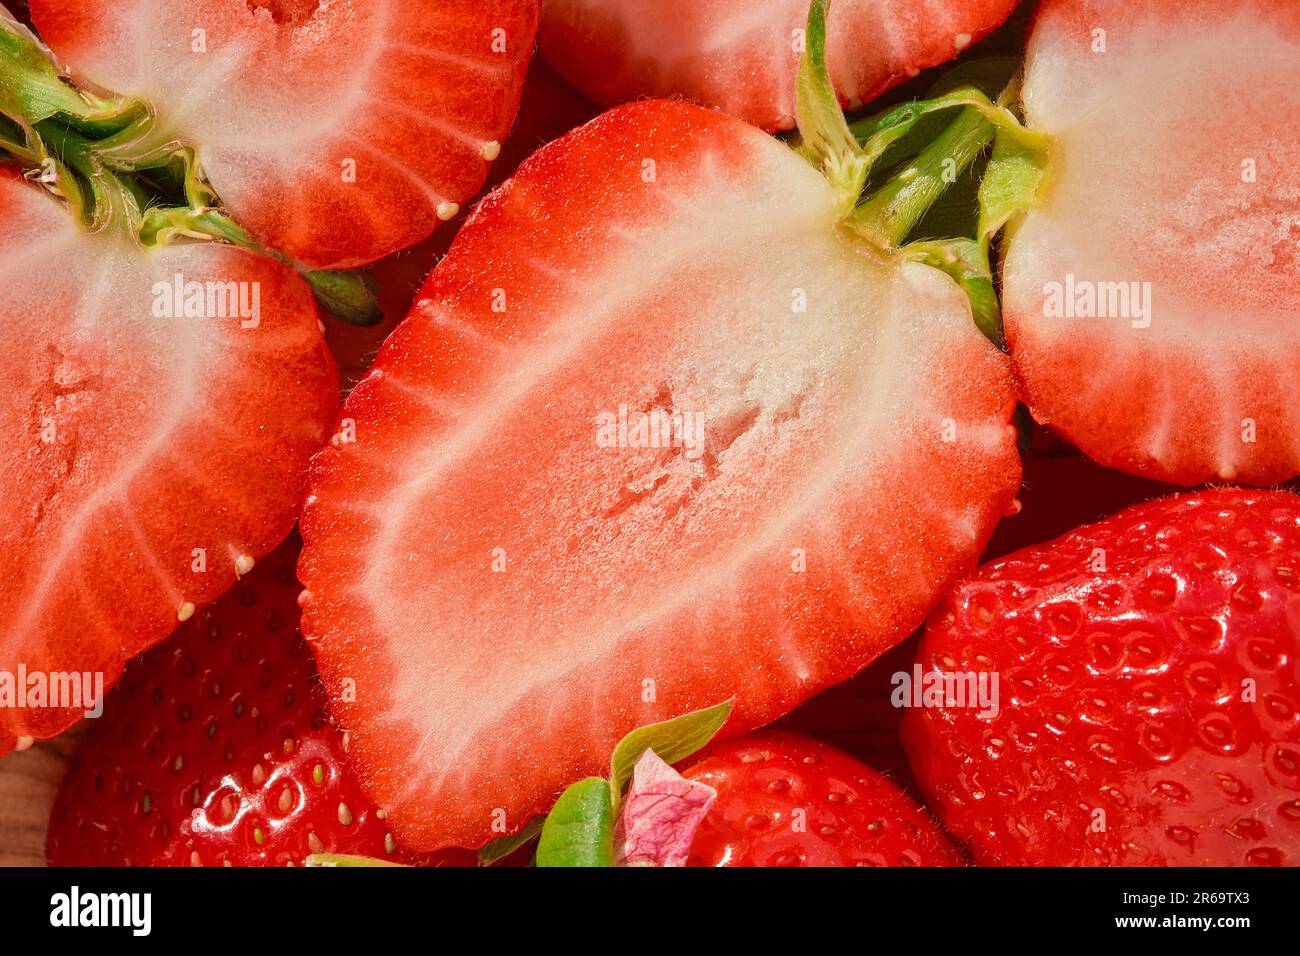 La moitié d'une fraise en gros plan sur une table en bois, récolte saisonnière de baies, vue de dessus, idée d'un fond de fraise ou de faire des desserts Banque D'Images